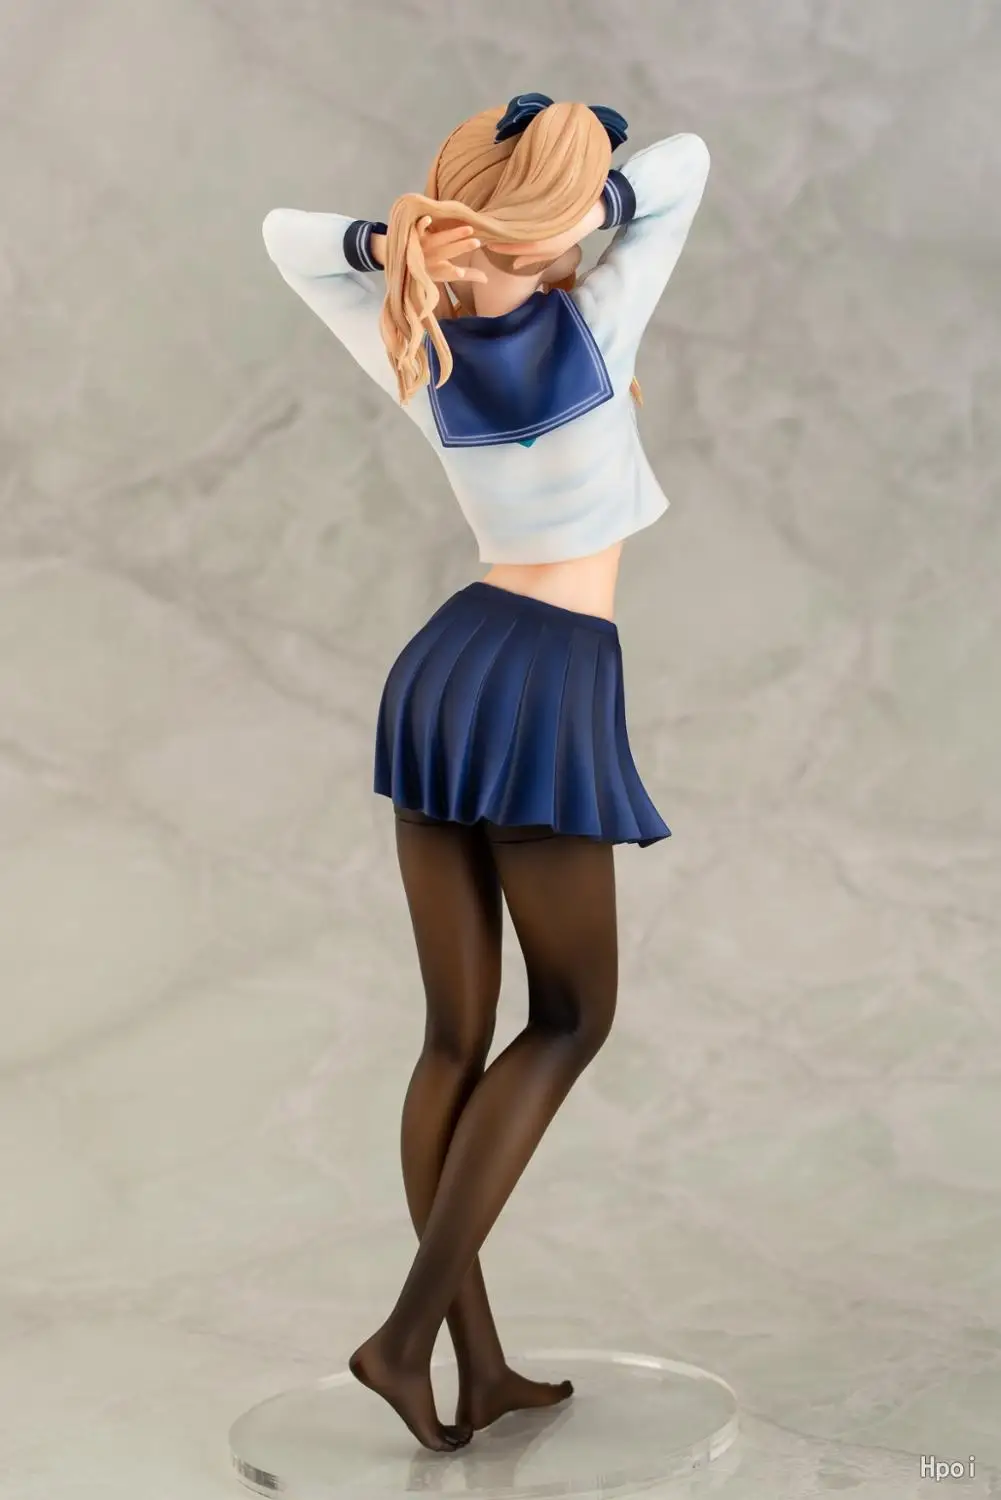 DAIKI Kagurazaka Reina Hiten Chicas Sexy de PVC figuras de Acción, Anime Juguete Japón Anime Figuras Estatua adulto Modelo de la Colección de Muñecas Regalos 5